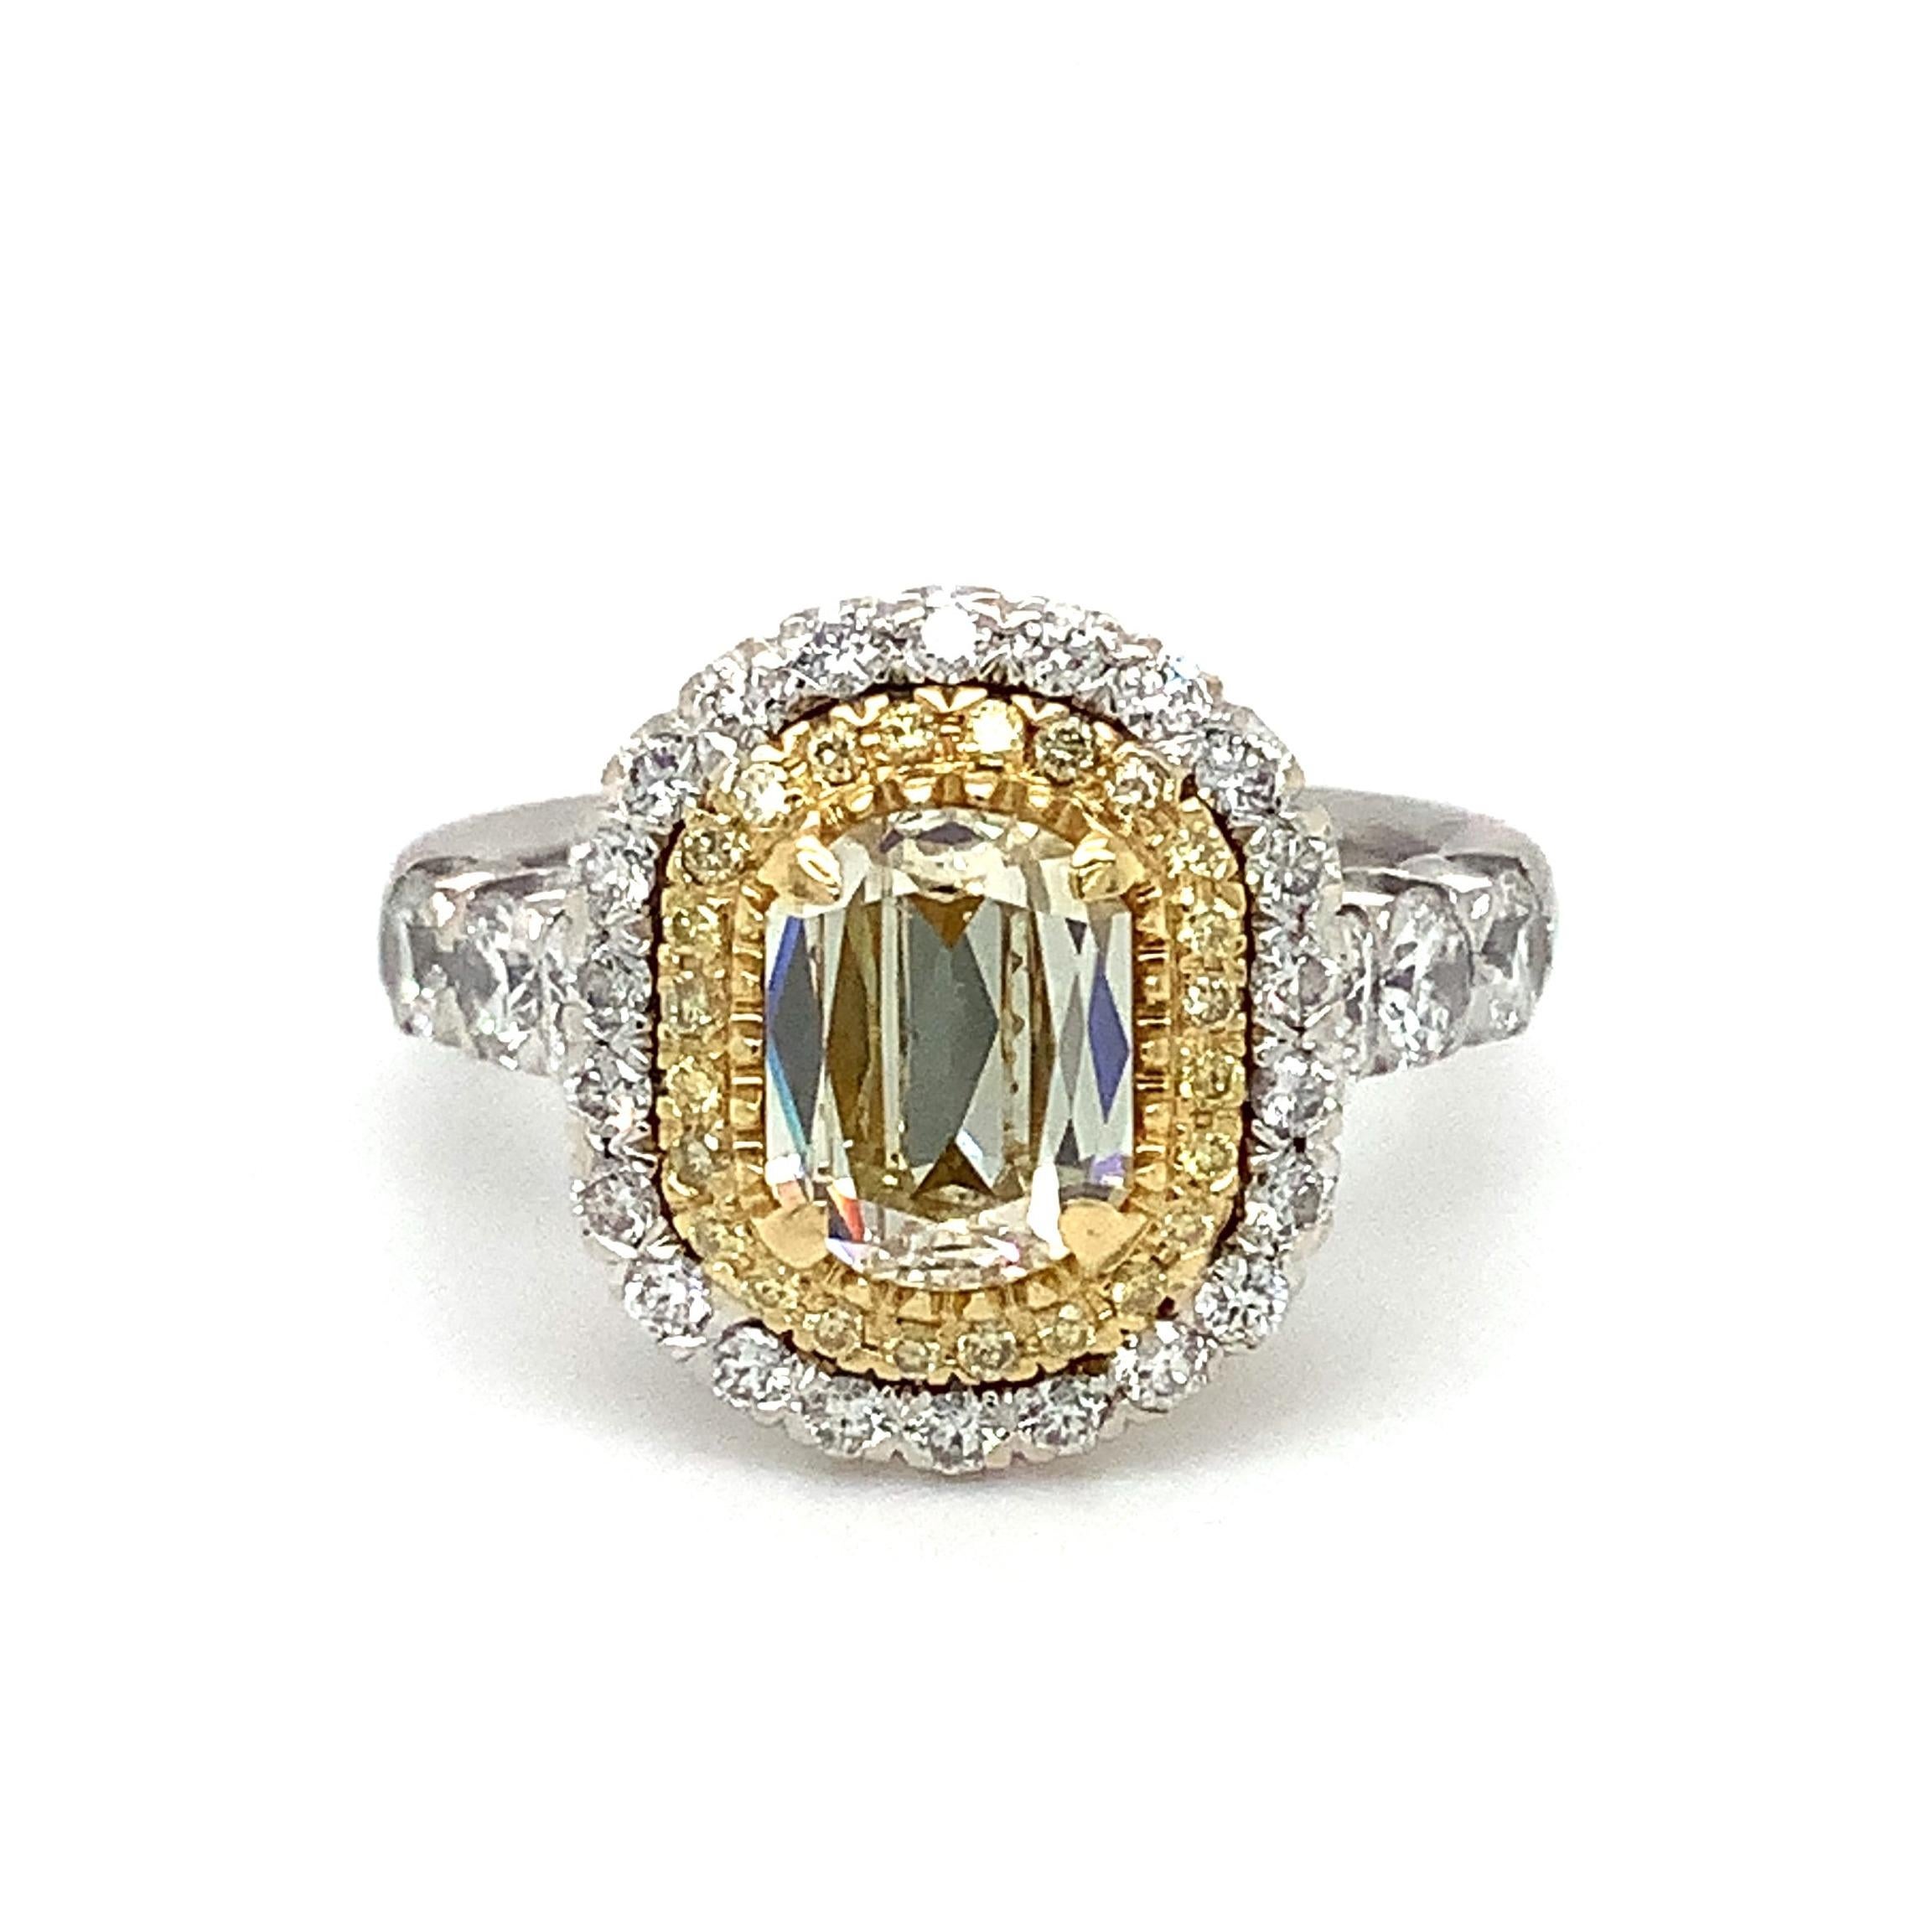  Dieser Christopher Designs L'Amour Crisscut® Light Fancy Yellow Diamond Double Halo Ring ist aus 18 Karat Weiß- und Gelbgold gefertigt. Das Herzstück ist ein 1,20 ct. VVS1 Reinheit L'Amour Crisscut Oval Light Fancy Yellow Diamant. Insgesamt 0,11